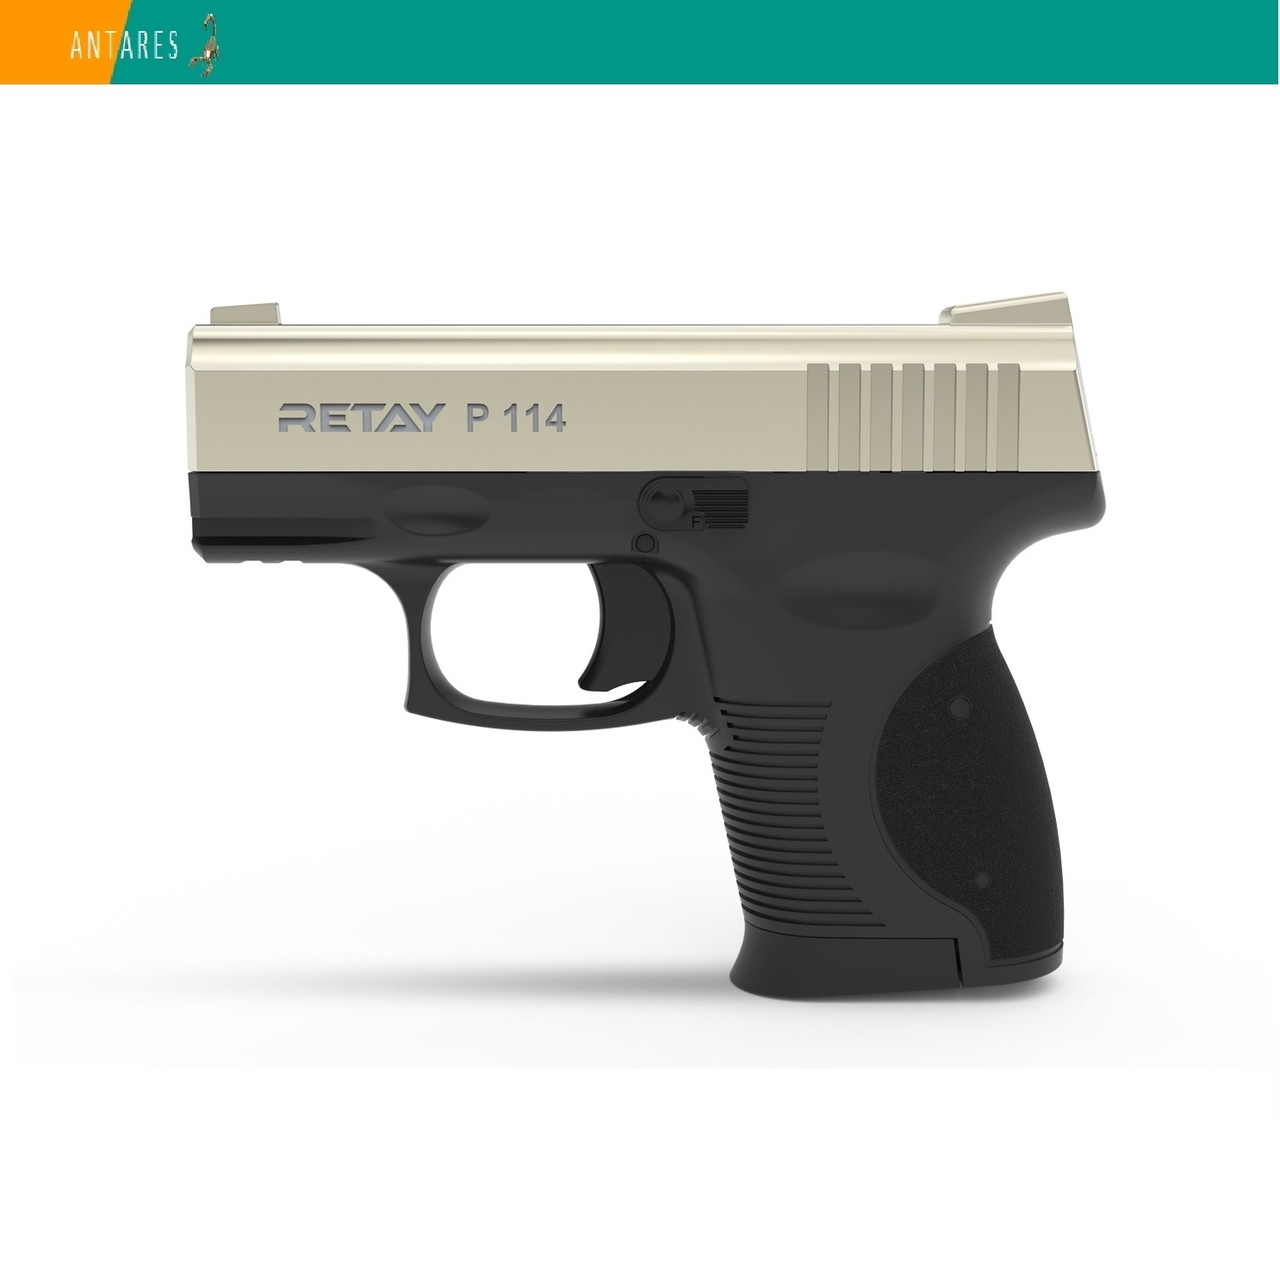 Пістолет стартовий Retay P114 сигнально-шумовий пугач під холостий патрон сатин Ретай (T210305S)